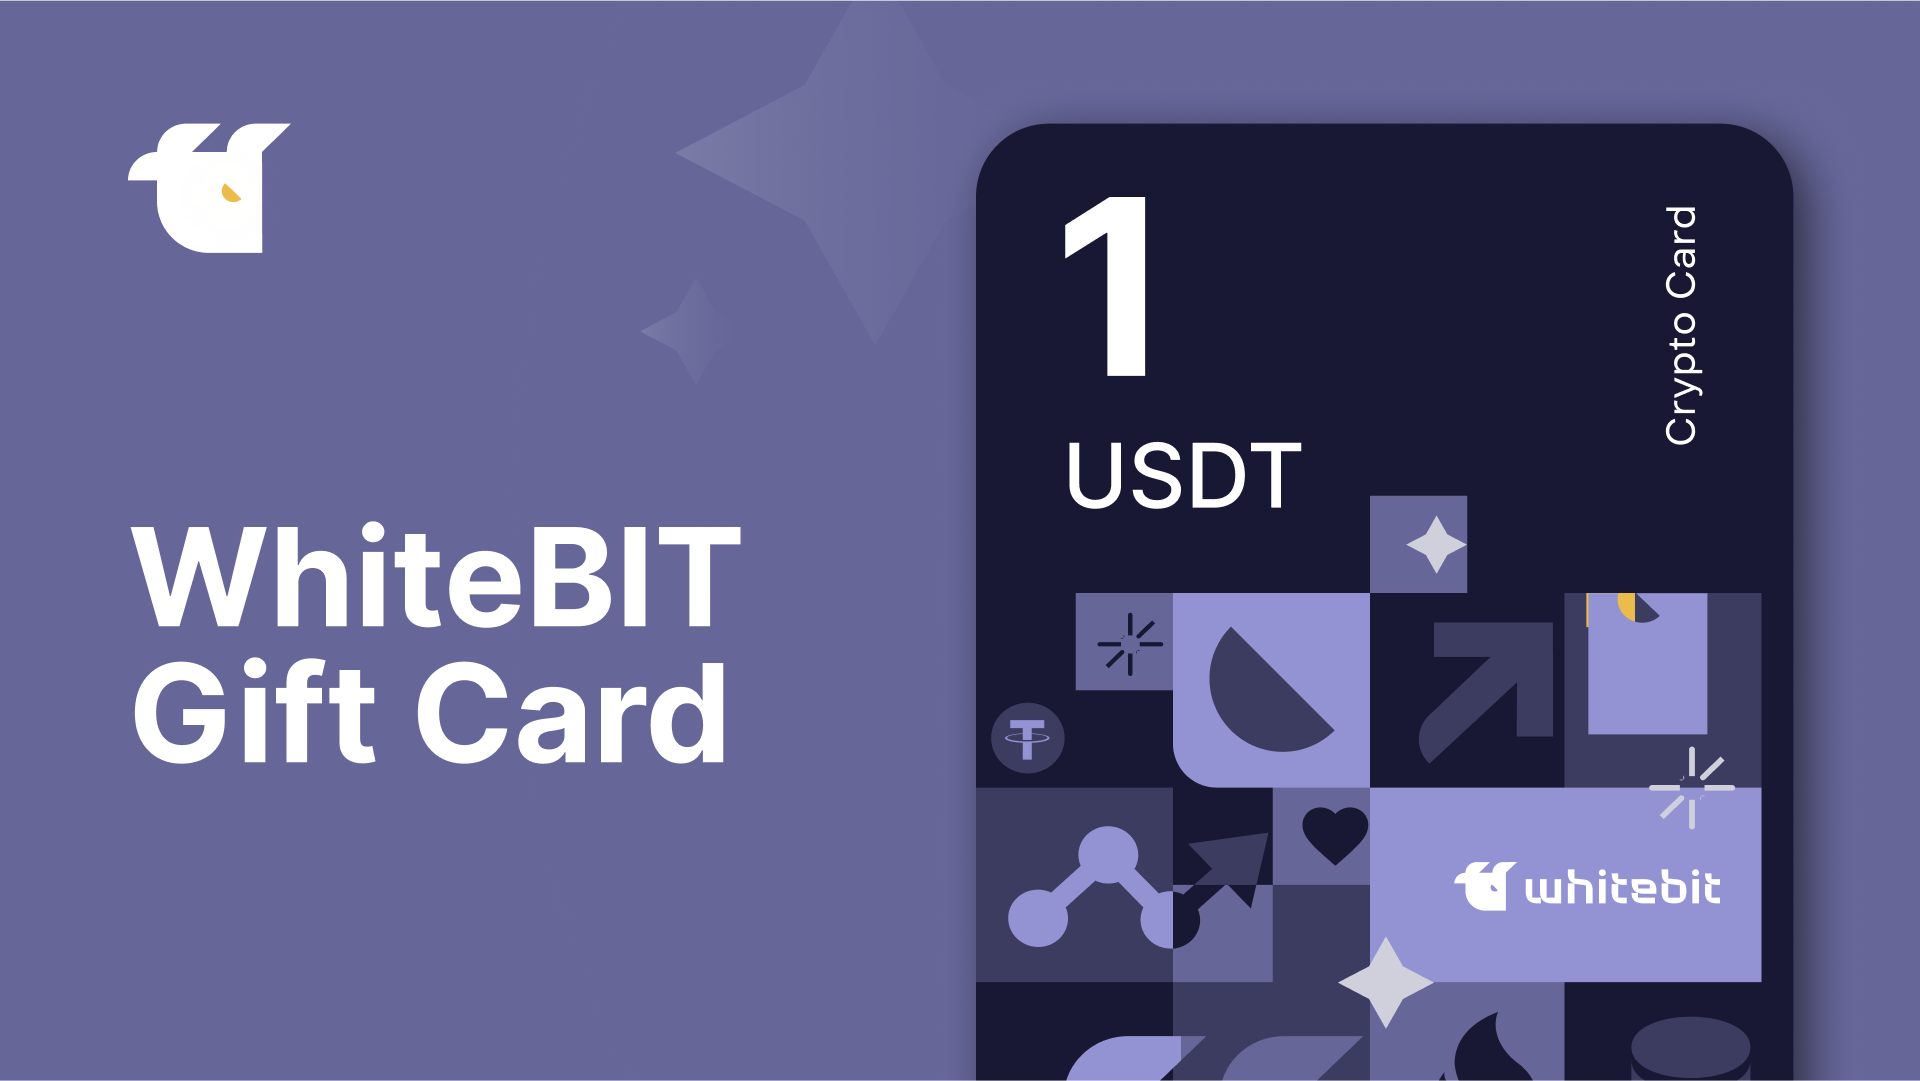 WhiteBIT 1 USDT Gift Card [USD 1.33]